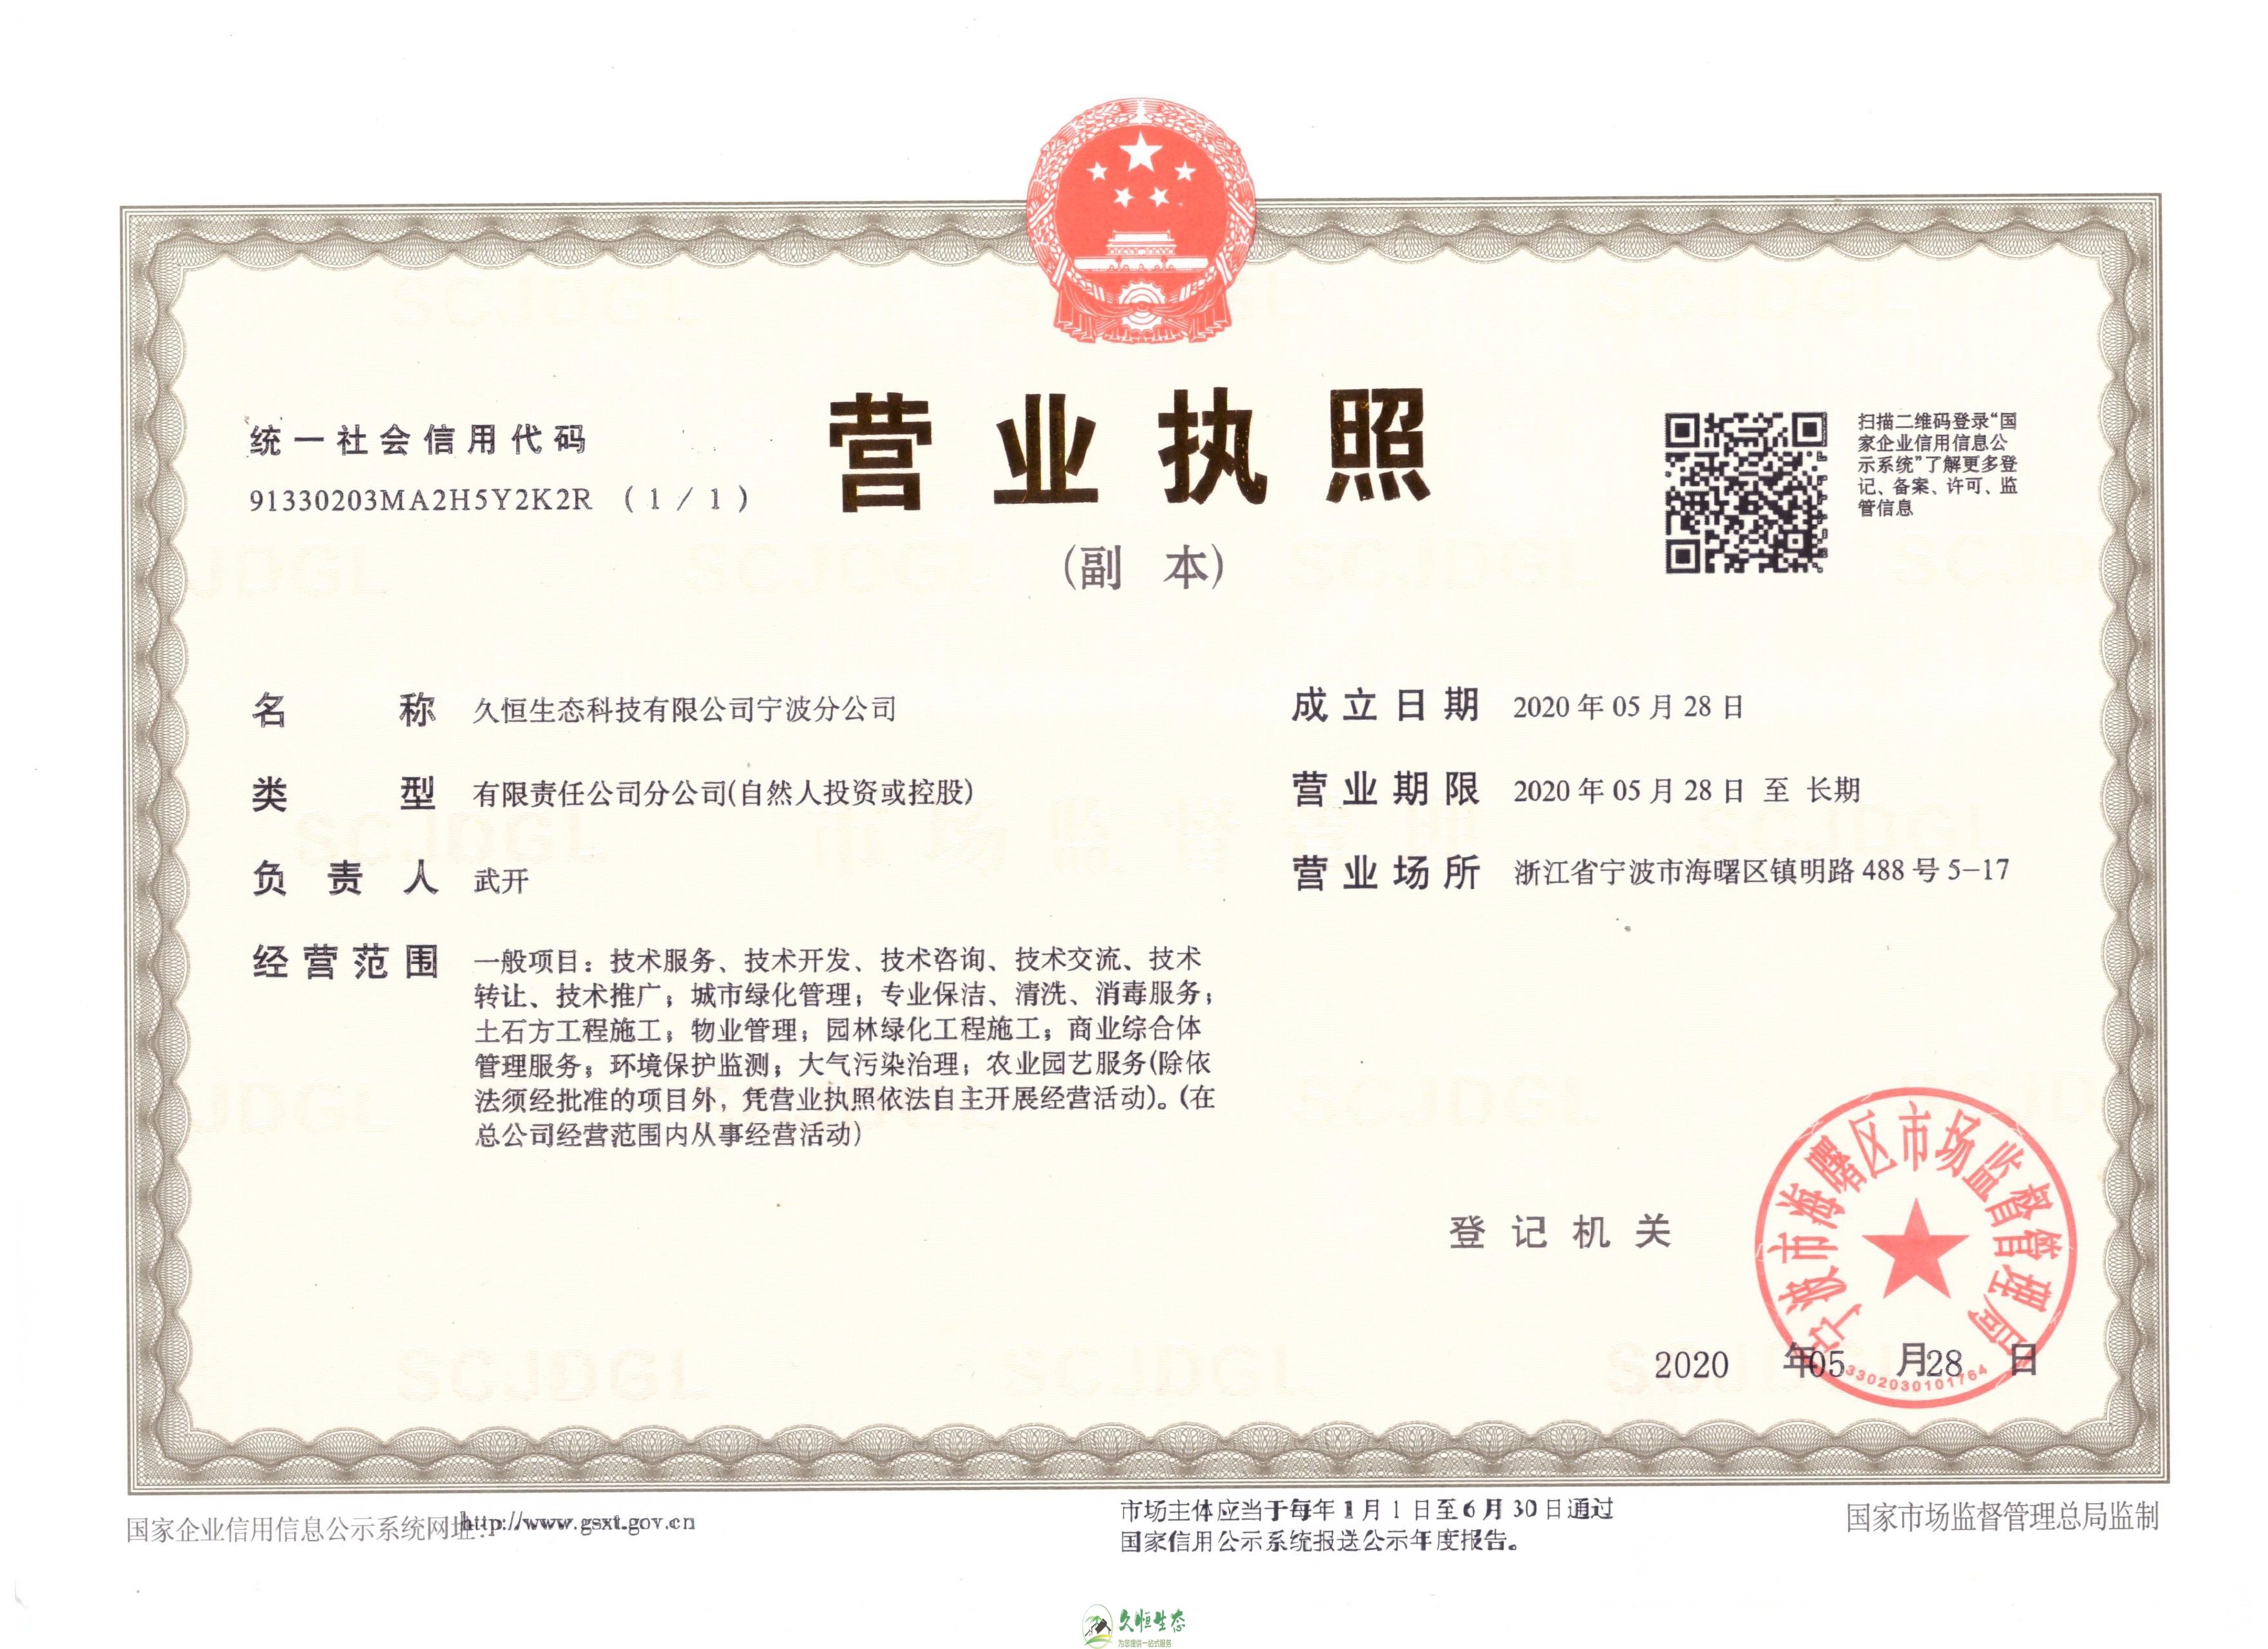 杭州桐庐久恒生态宁波分公司2020年5月28日成立